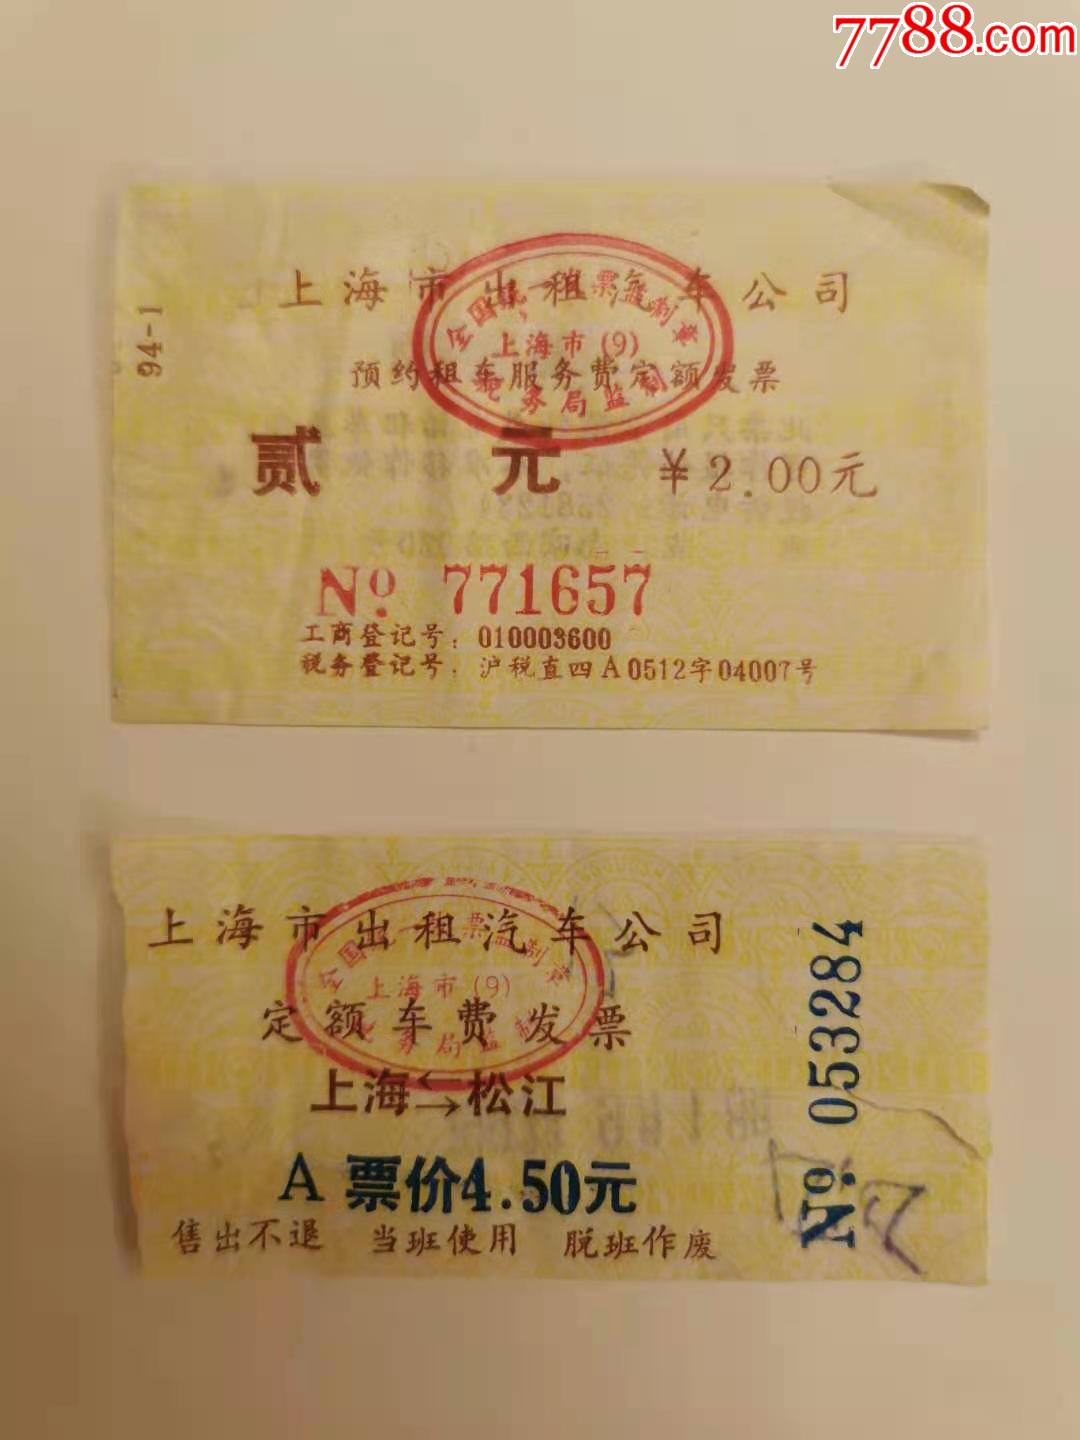 上海市出租汽车公司定额发票2种